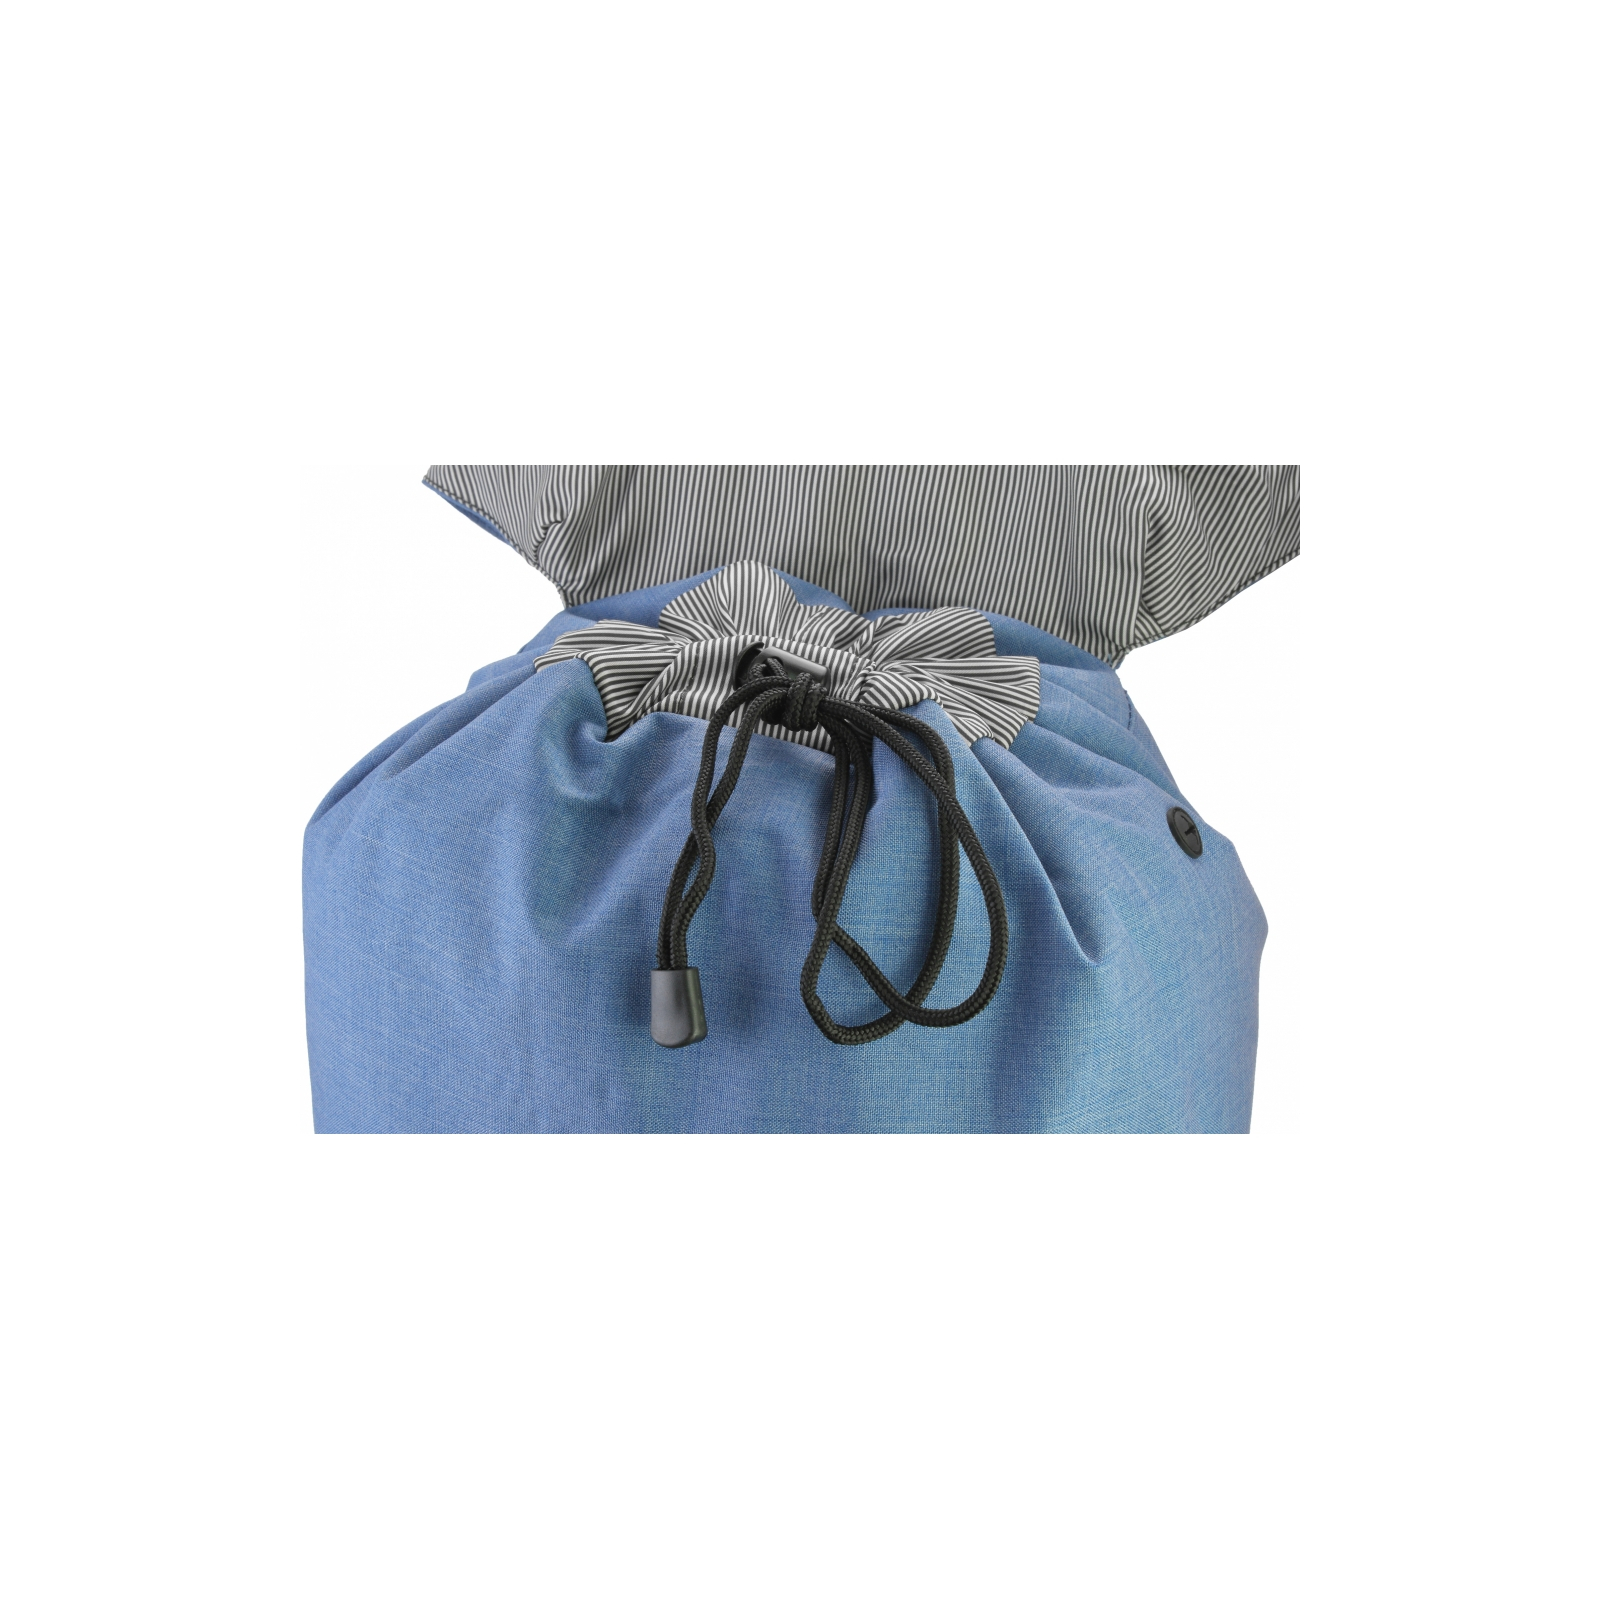 Рюкзак школьный Bodachel 46*16*30 см синий (BS09-31) изображение 4